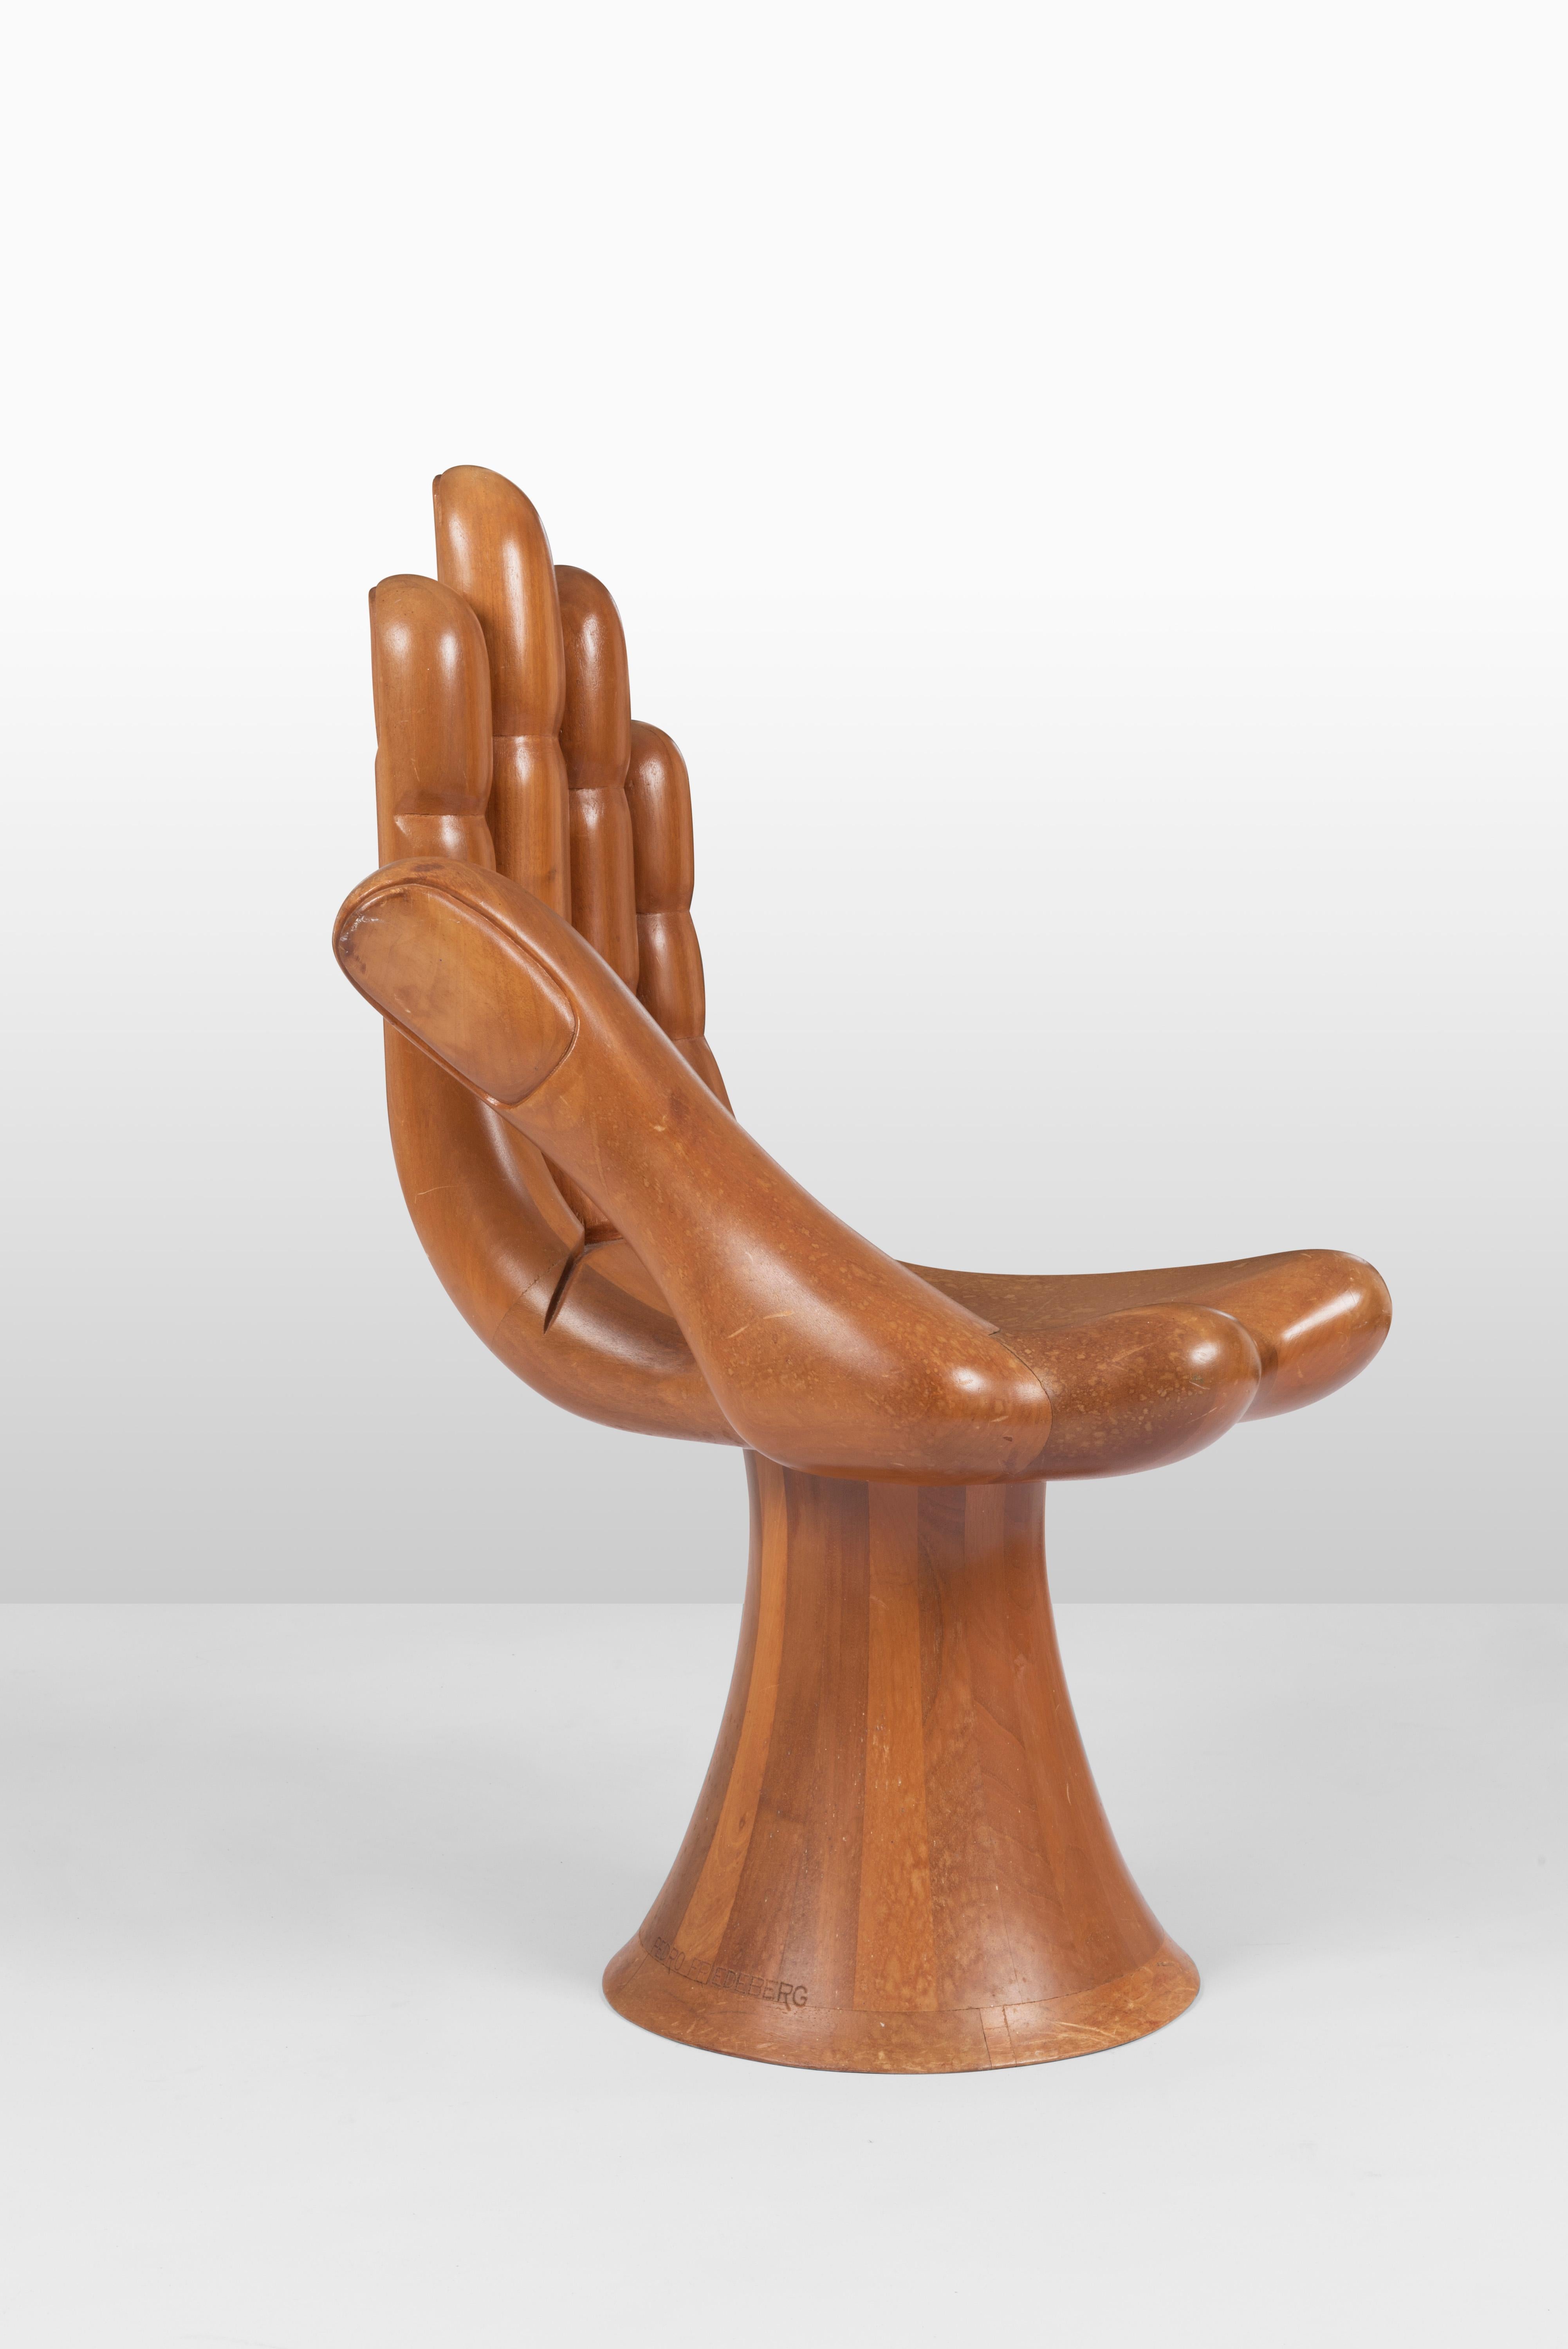 Cette magnifique chaise à main brun doré de Pedro Friedeberg a été commandée dans les années 1960 et est fabriquée en acajou massif du Honduras. En 1961, alors que Pedro travaillait avec l'artiste Mathias Goeritz, ce dernier collaborait avec un